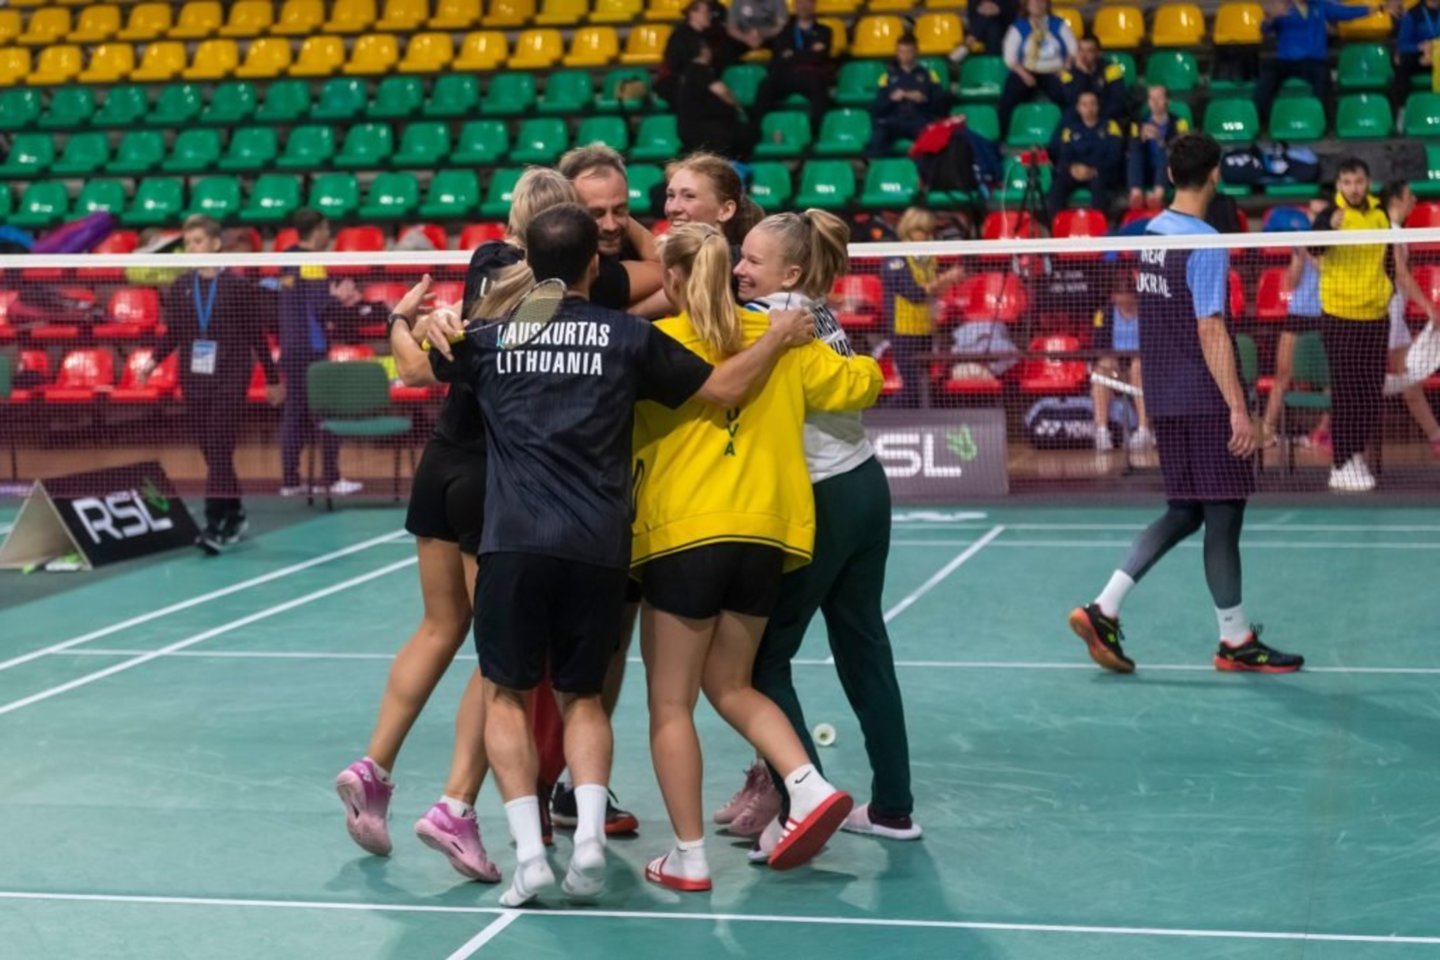 Lietuvos kurtieji badmintoninkai puikiai pasirodė Europos čempionate.<br>Augusto Četkausko (LKSK) nuotr.